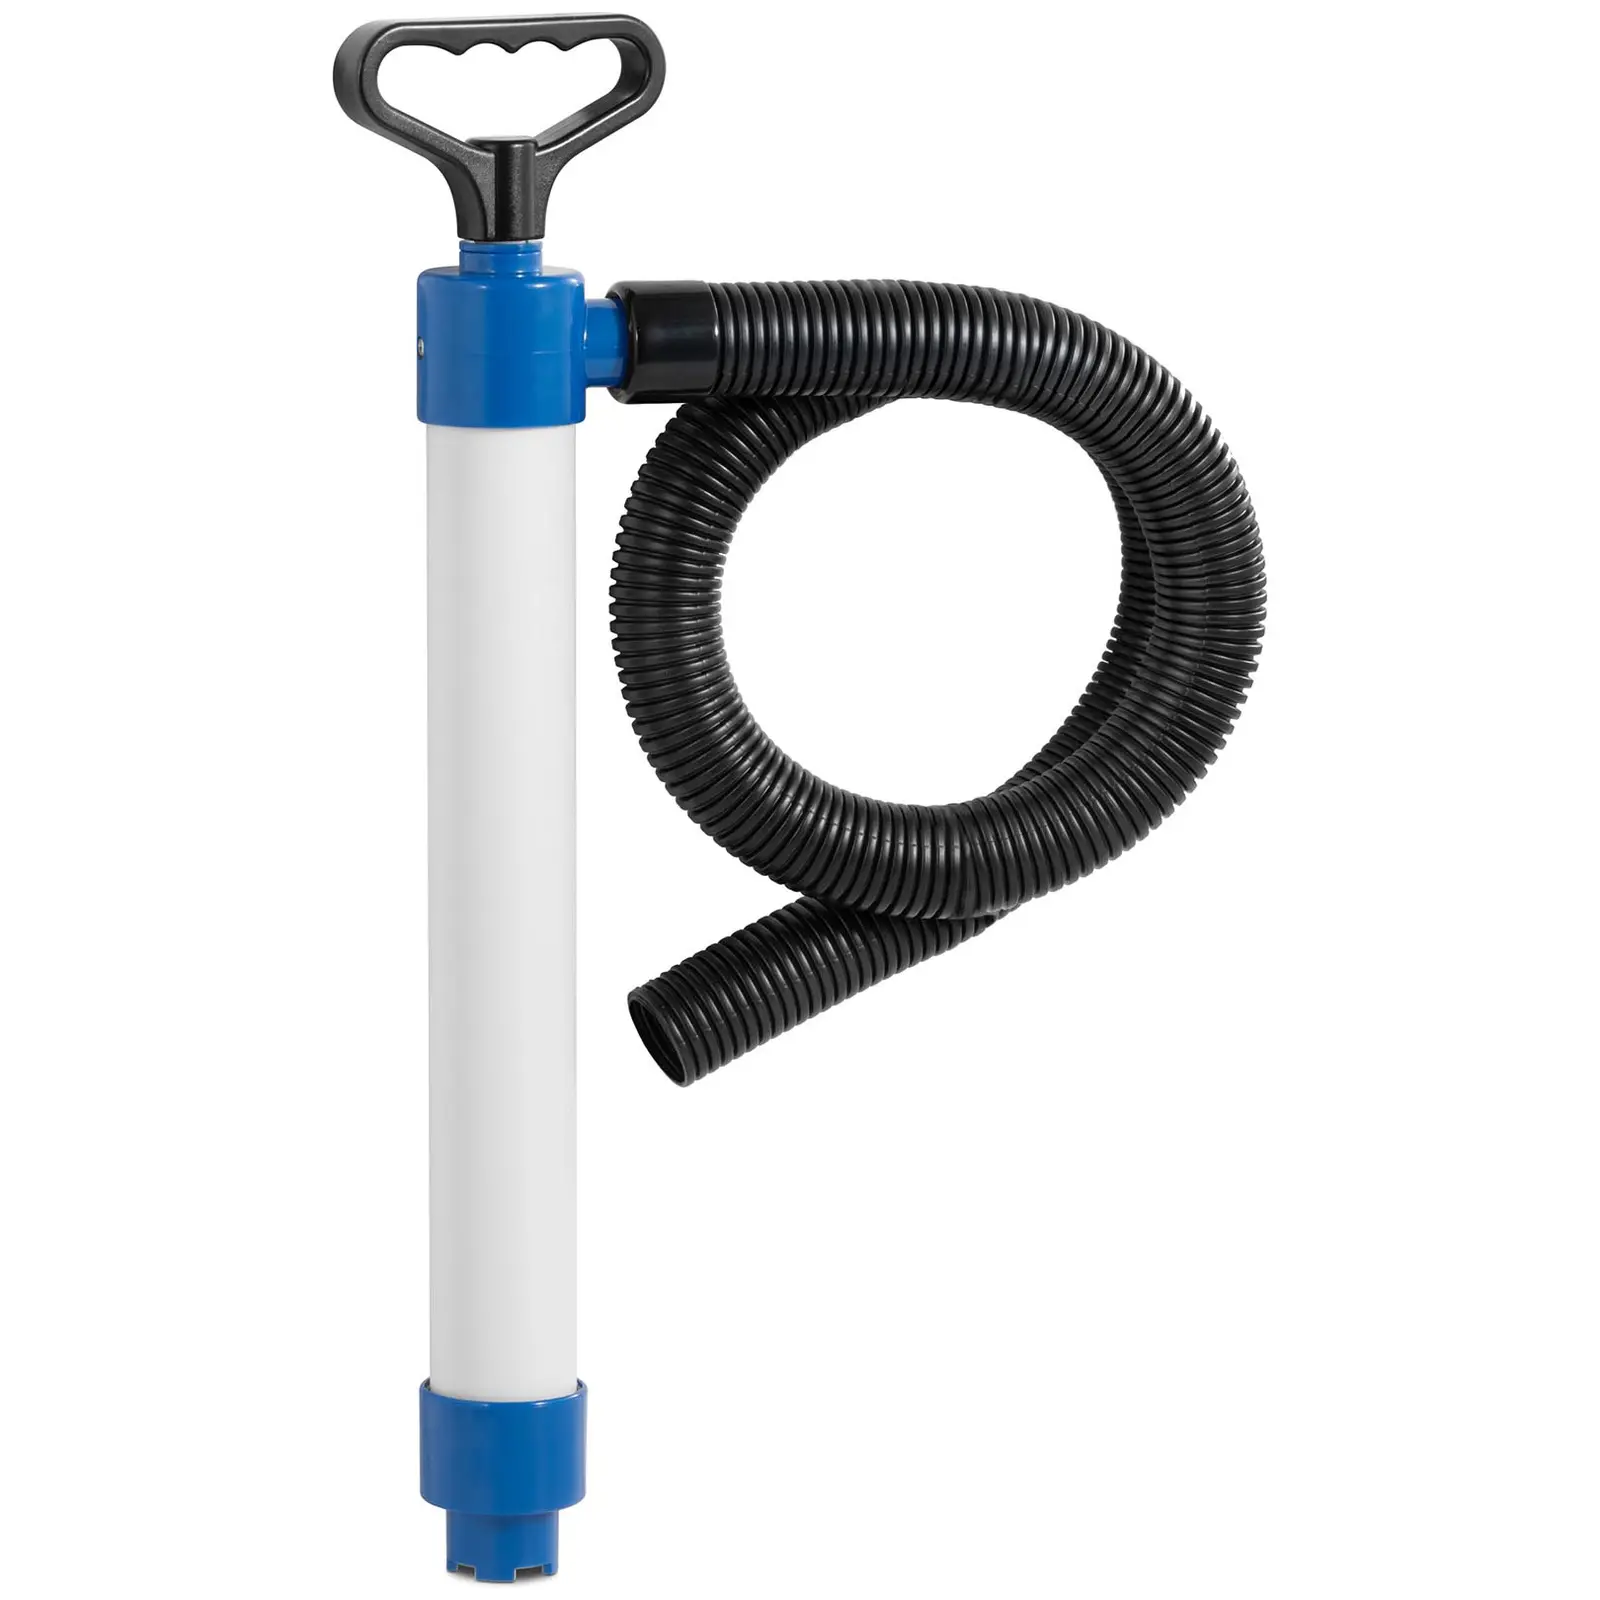 Pompa di sentina - Portata di 45 l/min - Con tubo flessibile